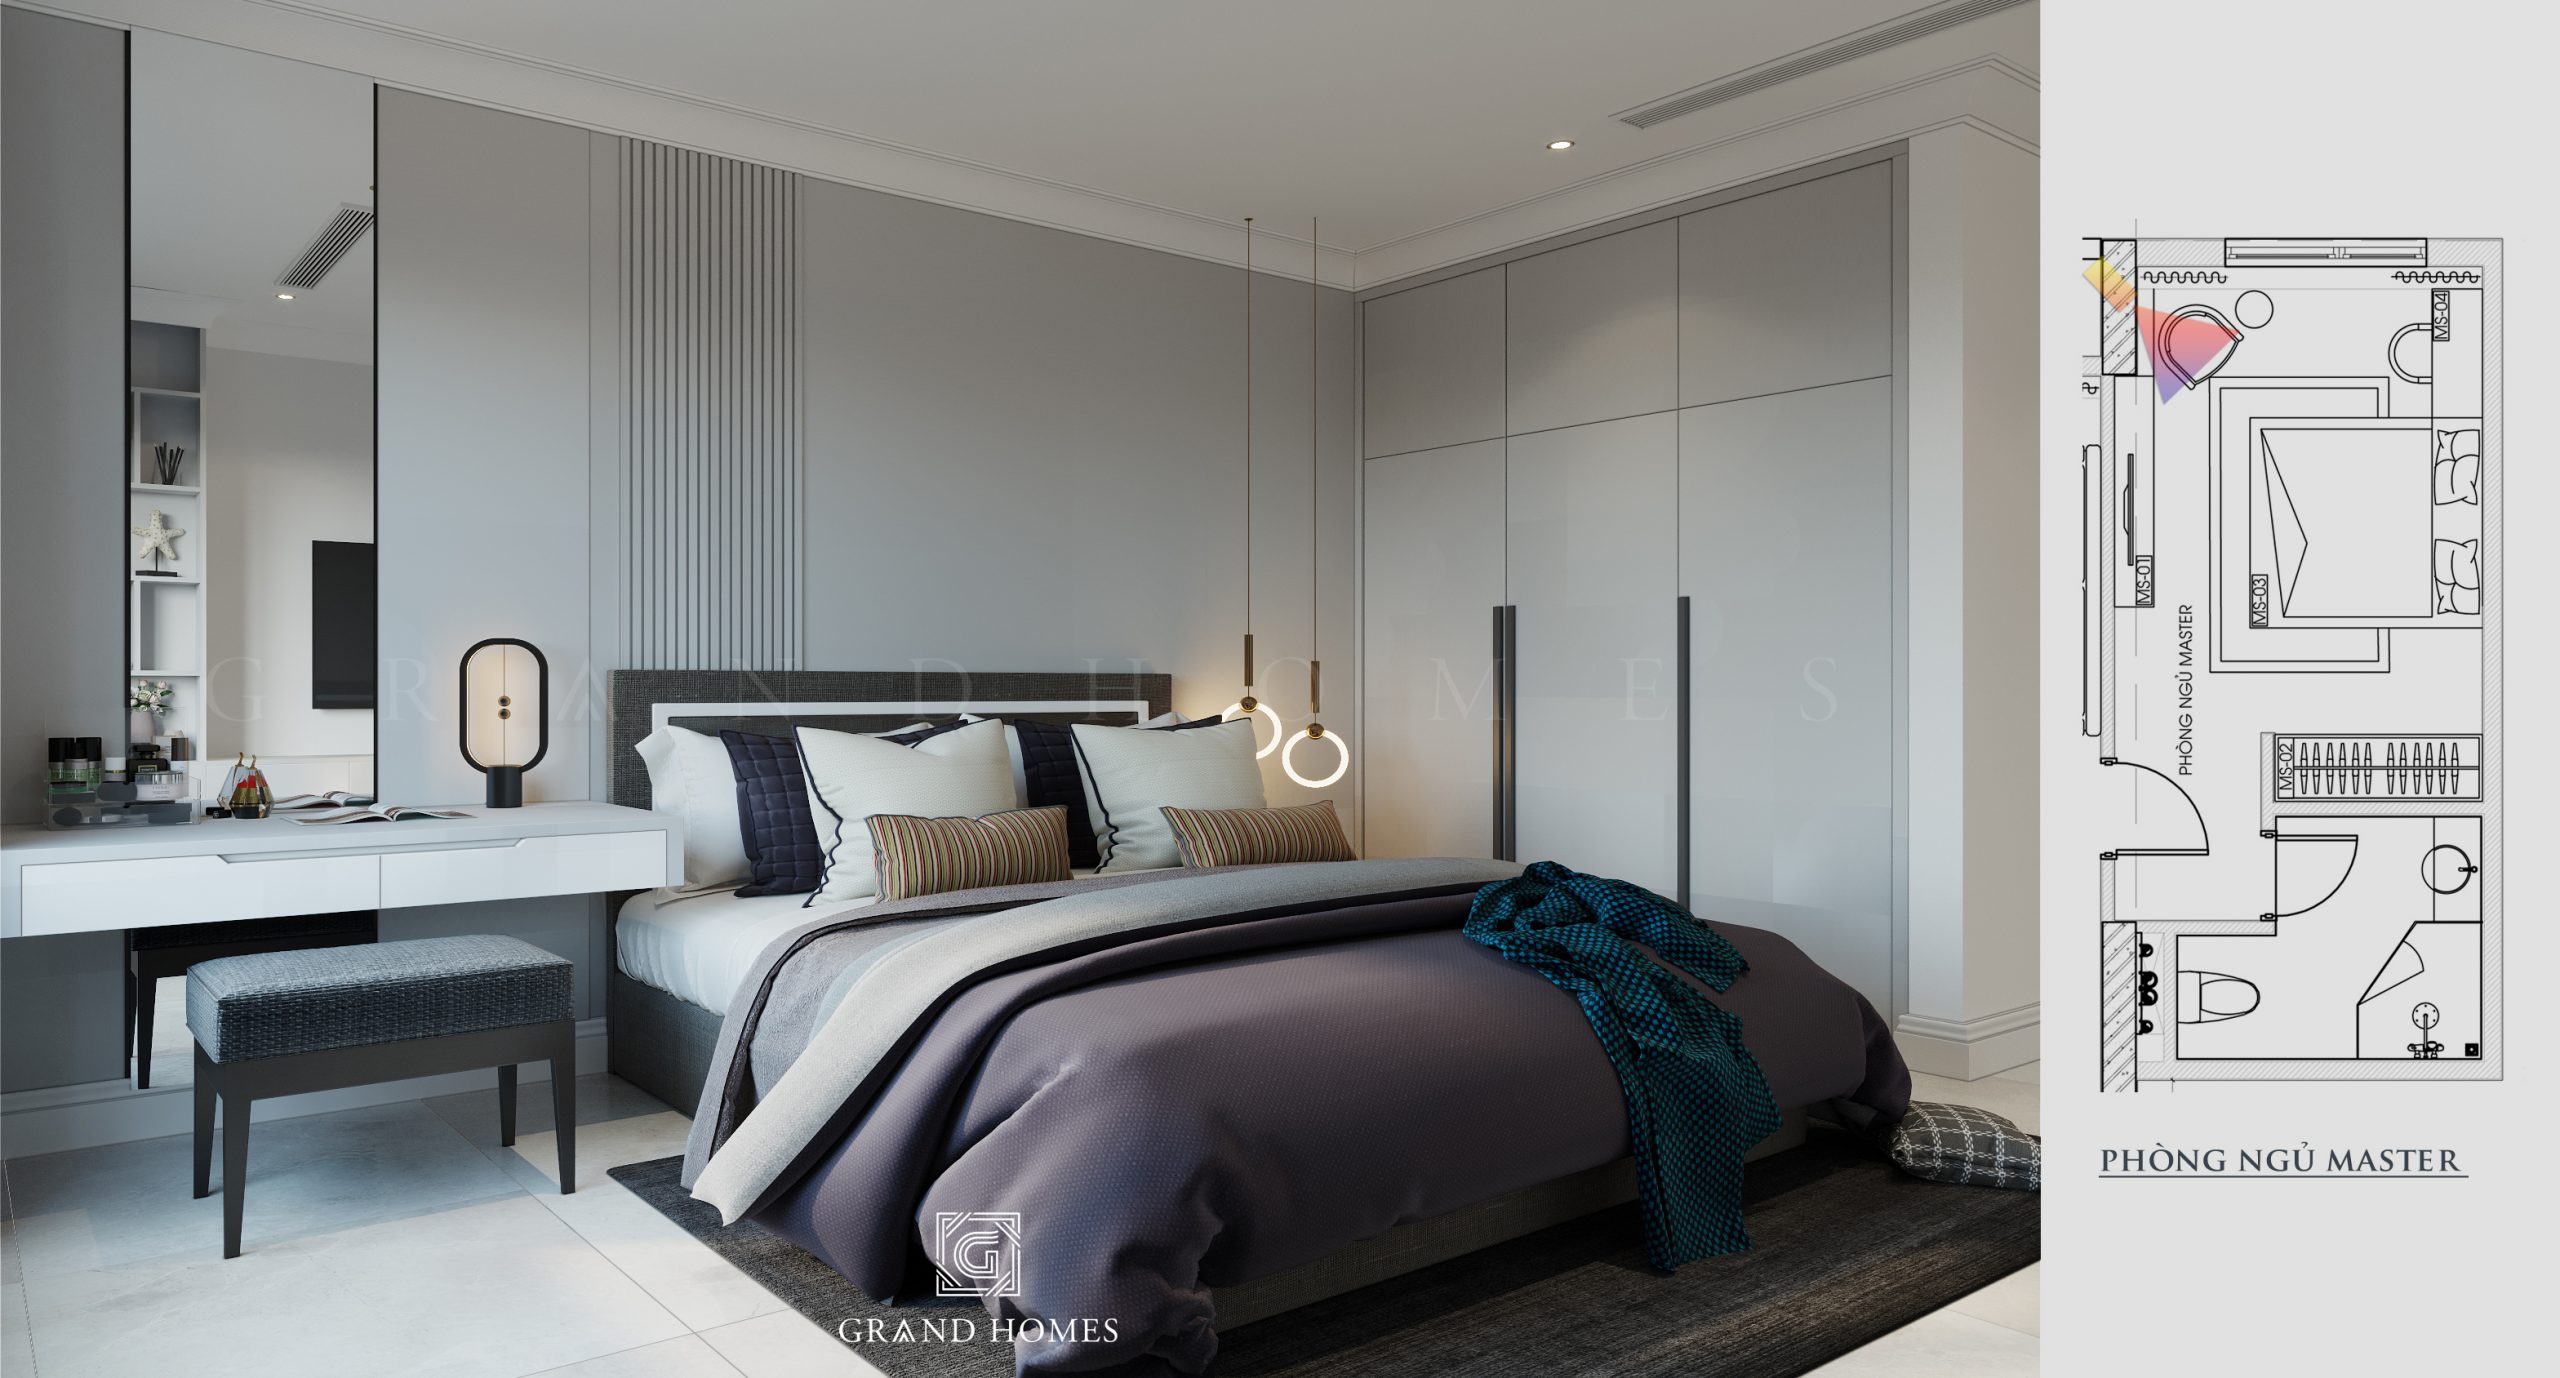 Phòng ngủ chung cư Master phong cách hiện đại rất phổ biến